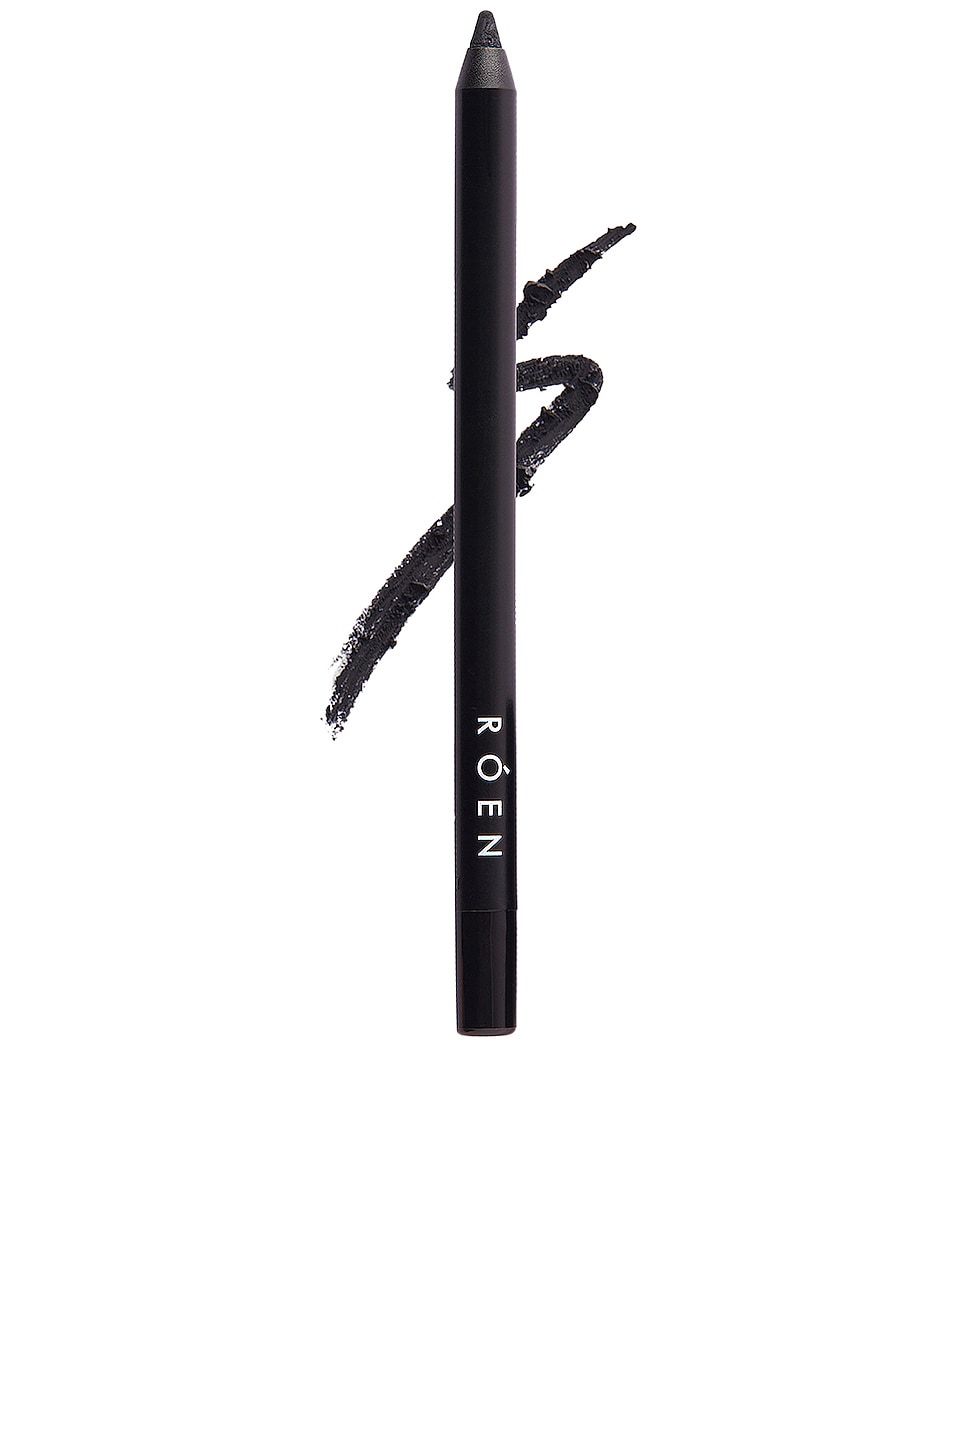 ROEN Eyeline Define Eyeliner Pencil in Black